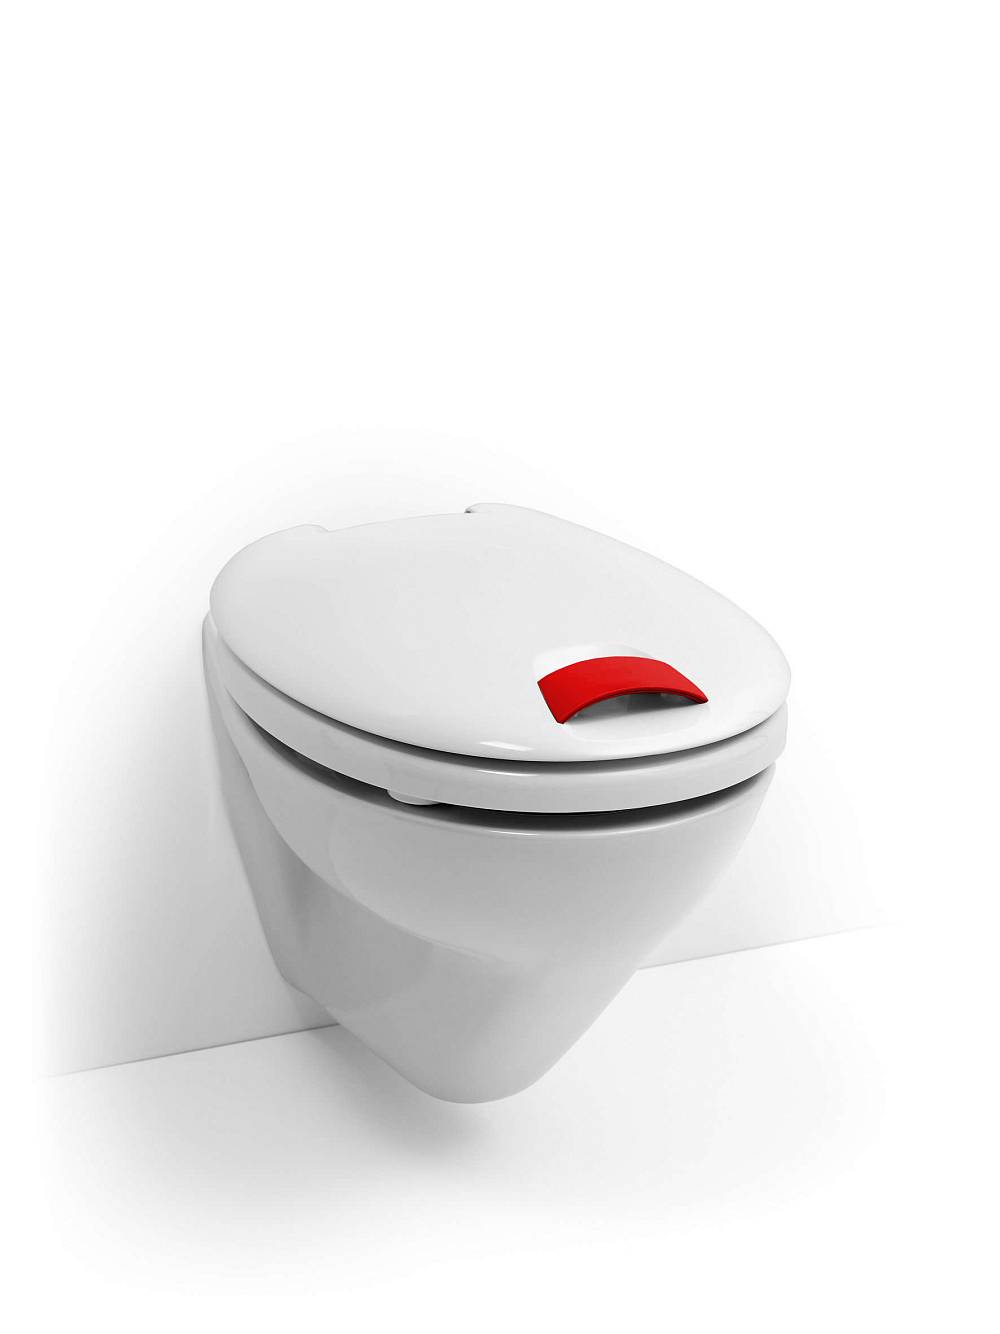 HAROMED WC-Sitz mit rotem Haltegriff.